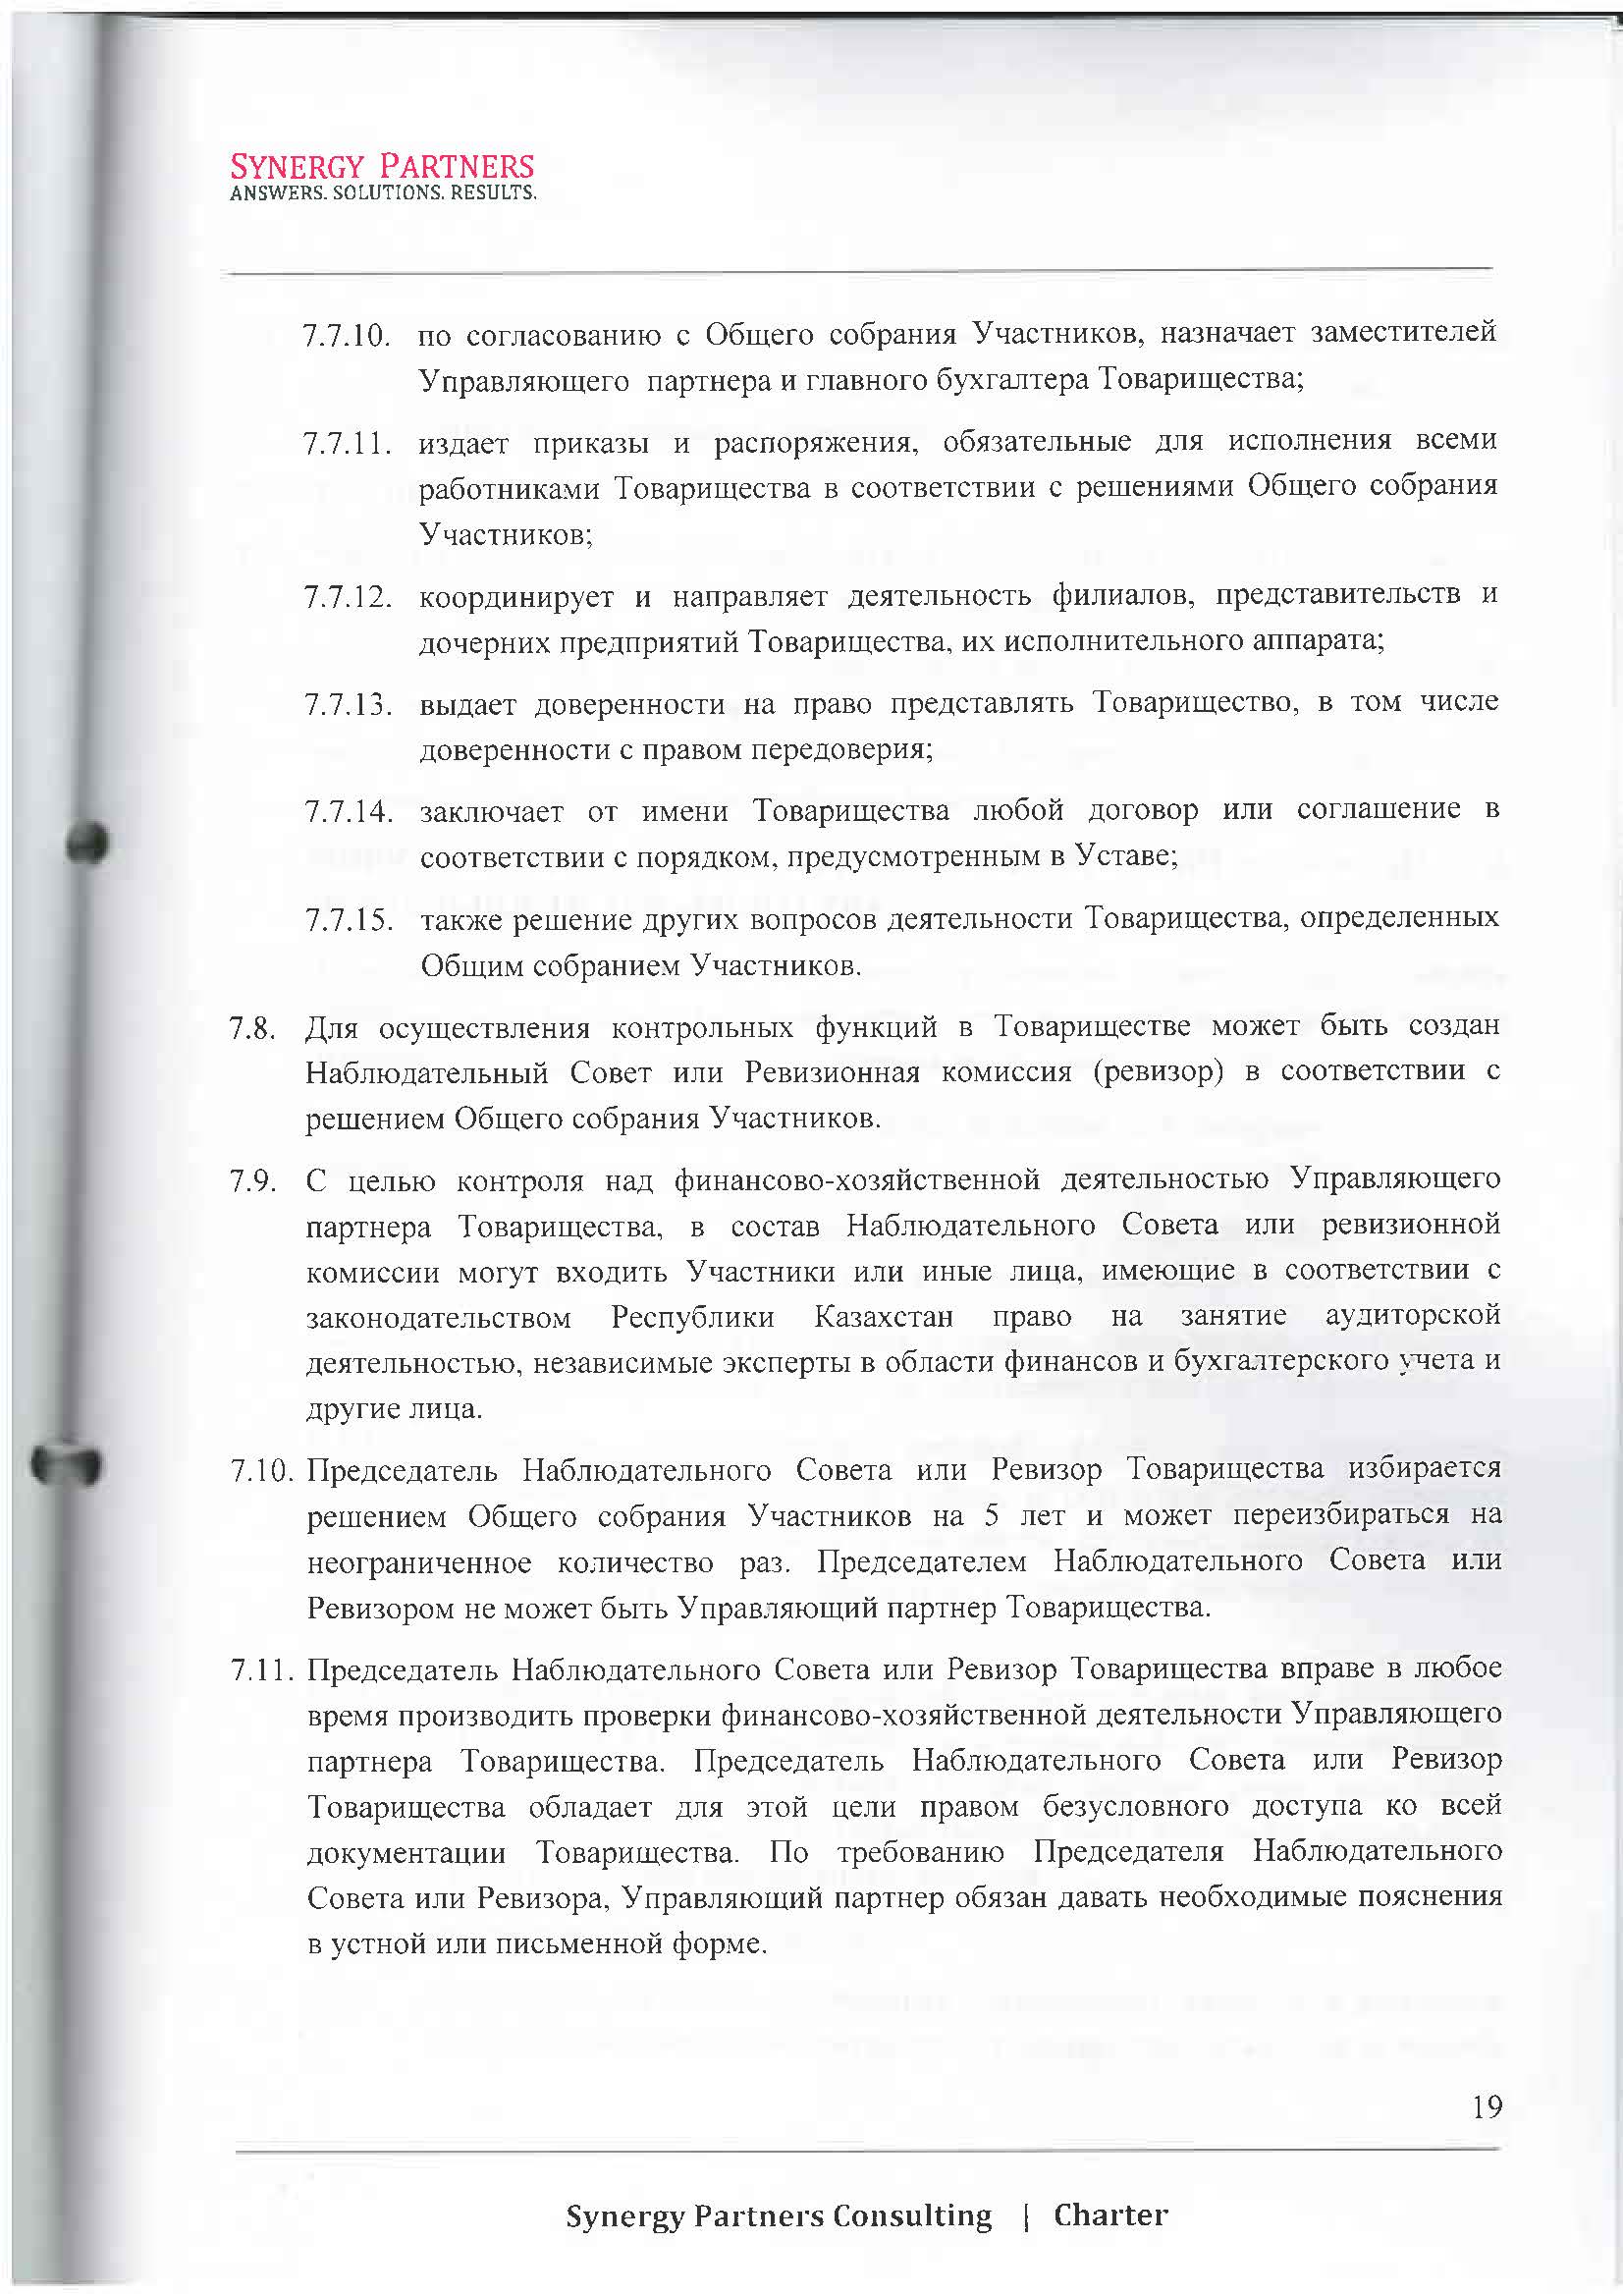 Наши реквизиты, сведения о нас - 17 | documentter.kz в Казахстане